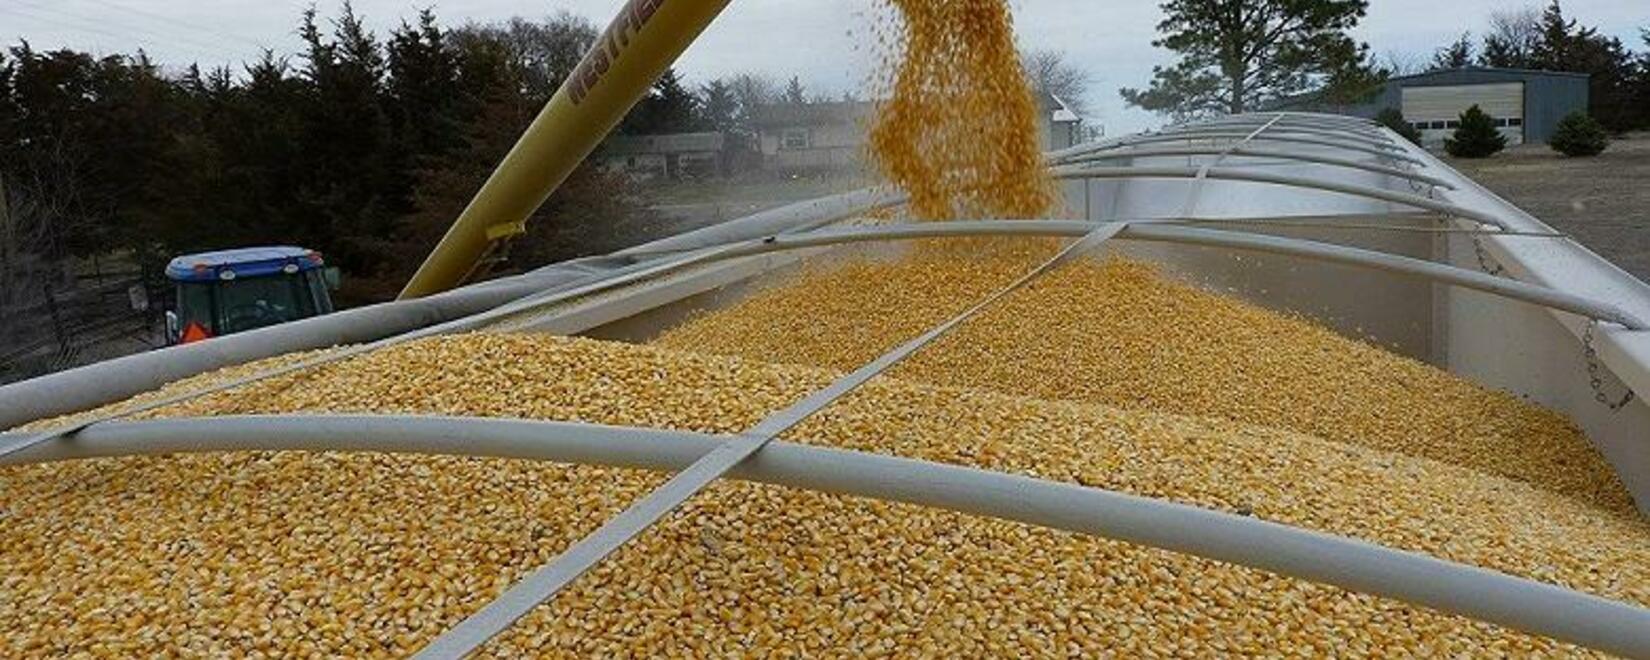 Экспортеры зерна из РФ могут получить право отказаться от части квоты на его вывоз